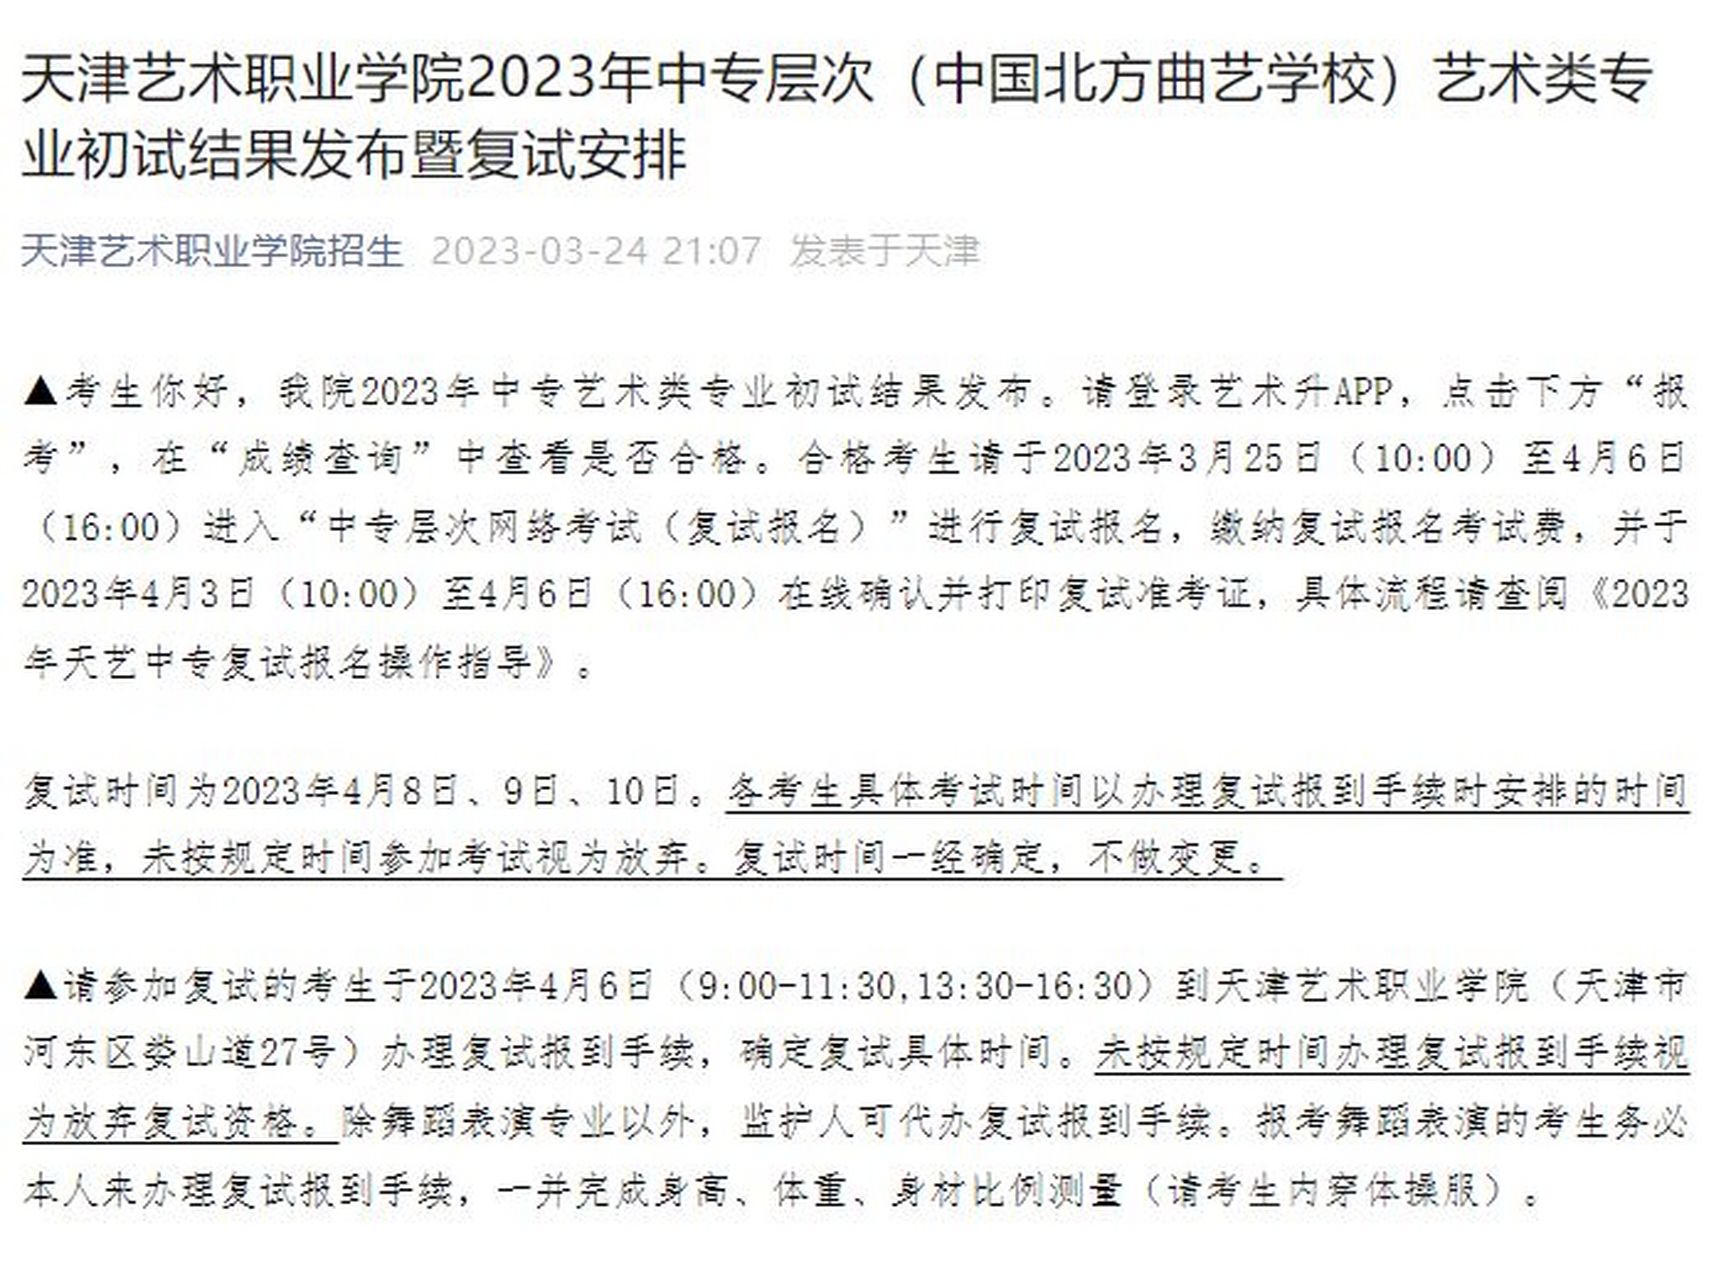 2023年中国北方曲艺学校艺术类专业复试安排 天津艺术职业学院2023年